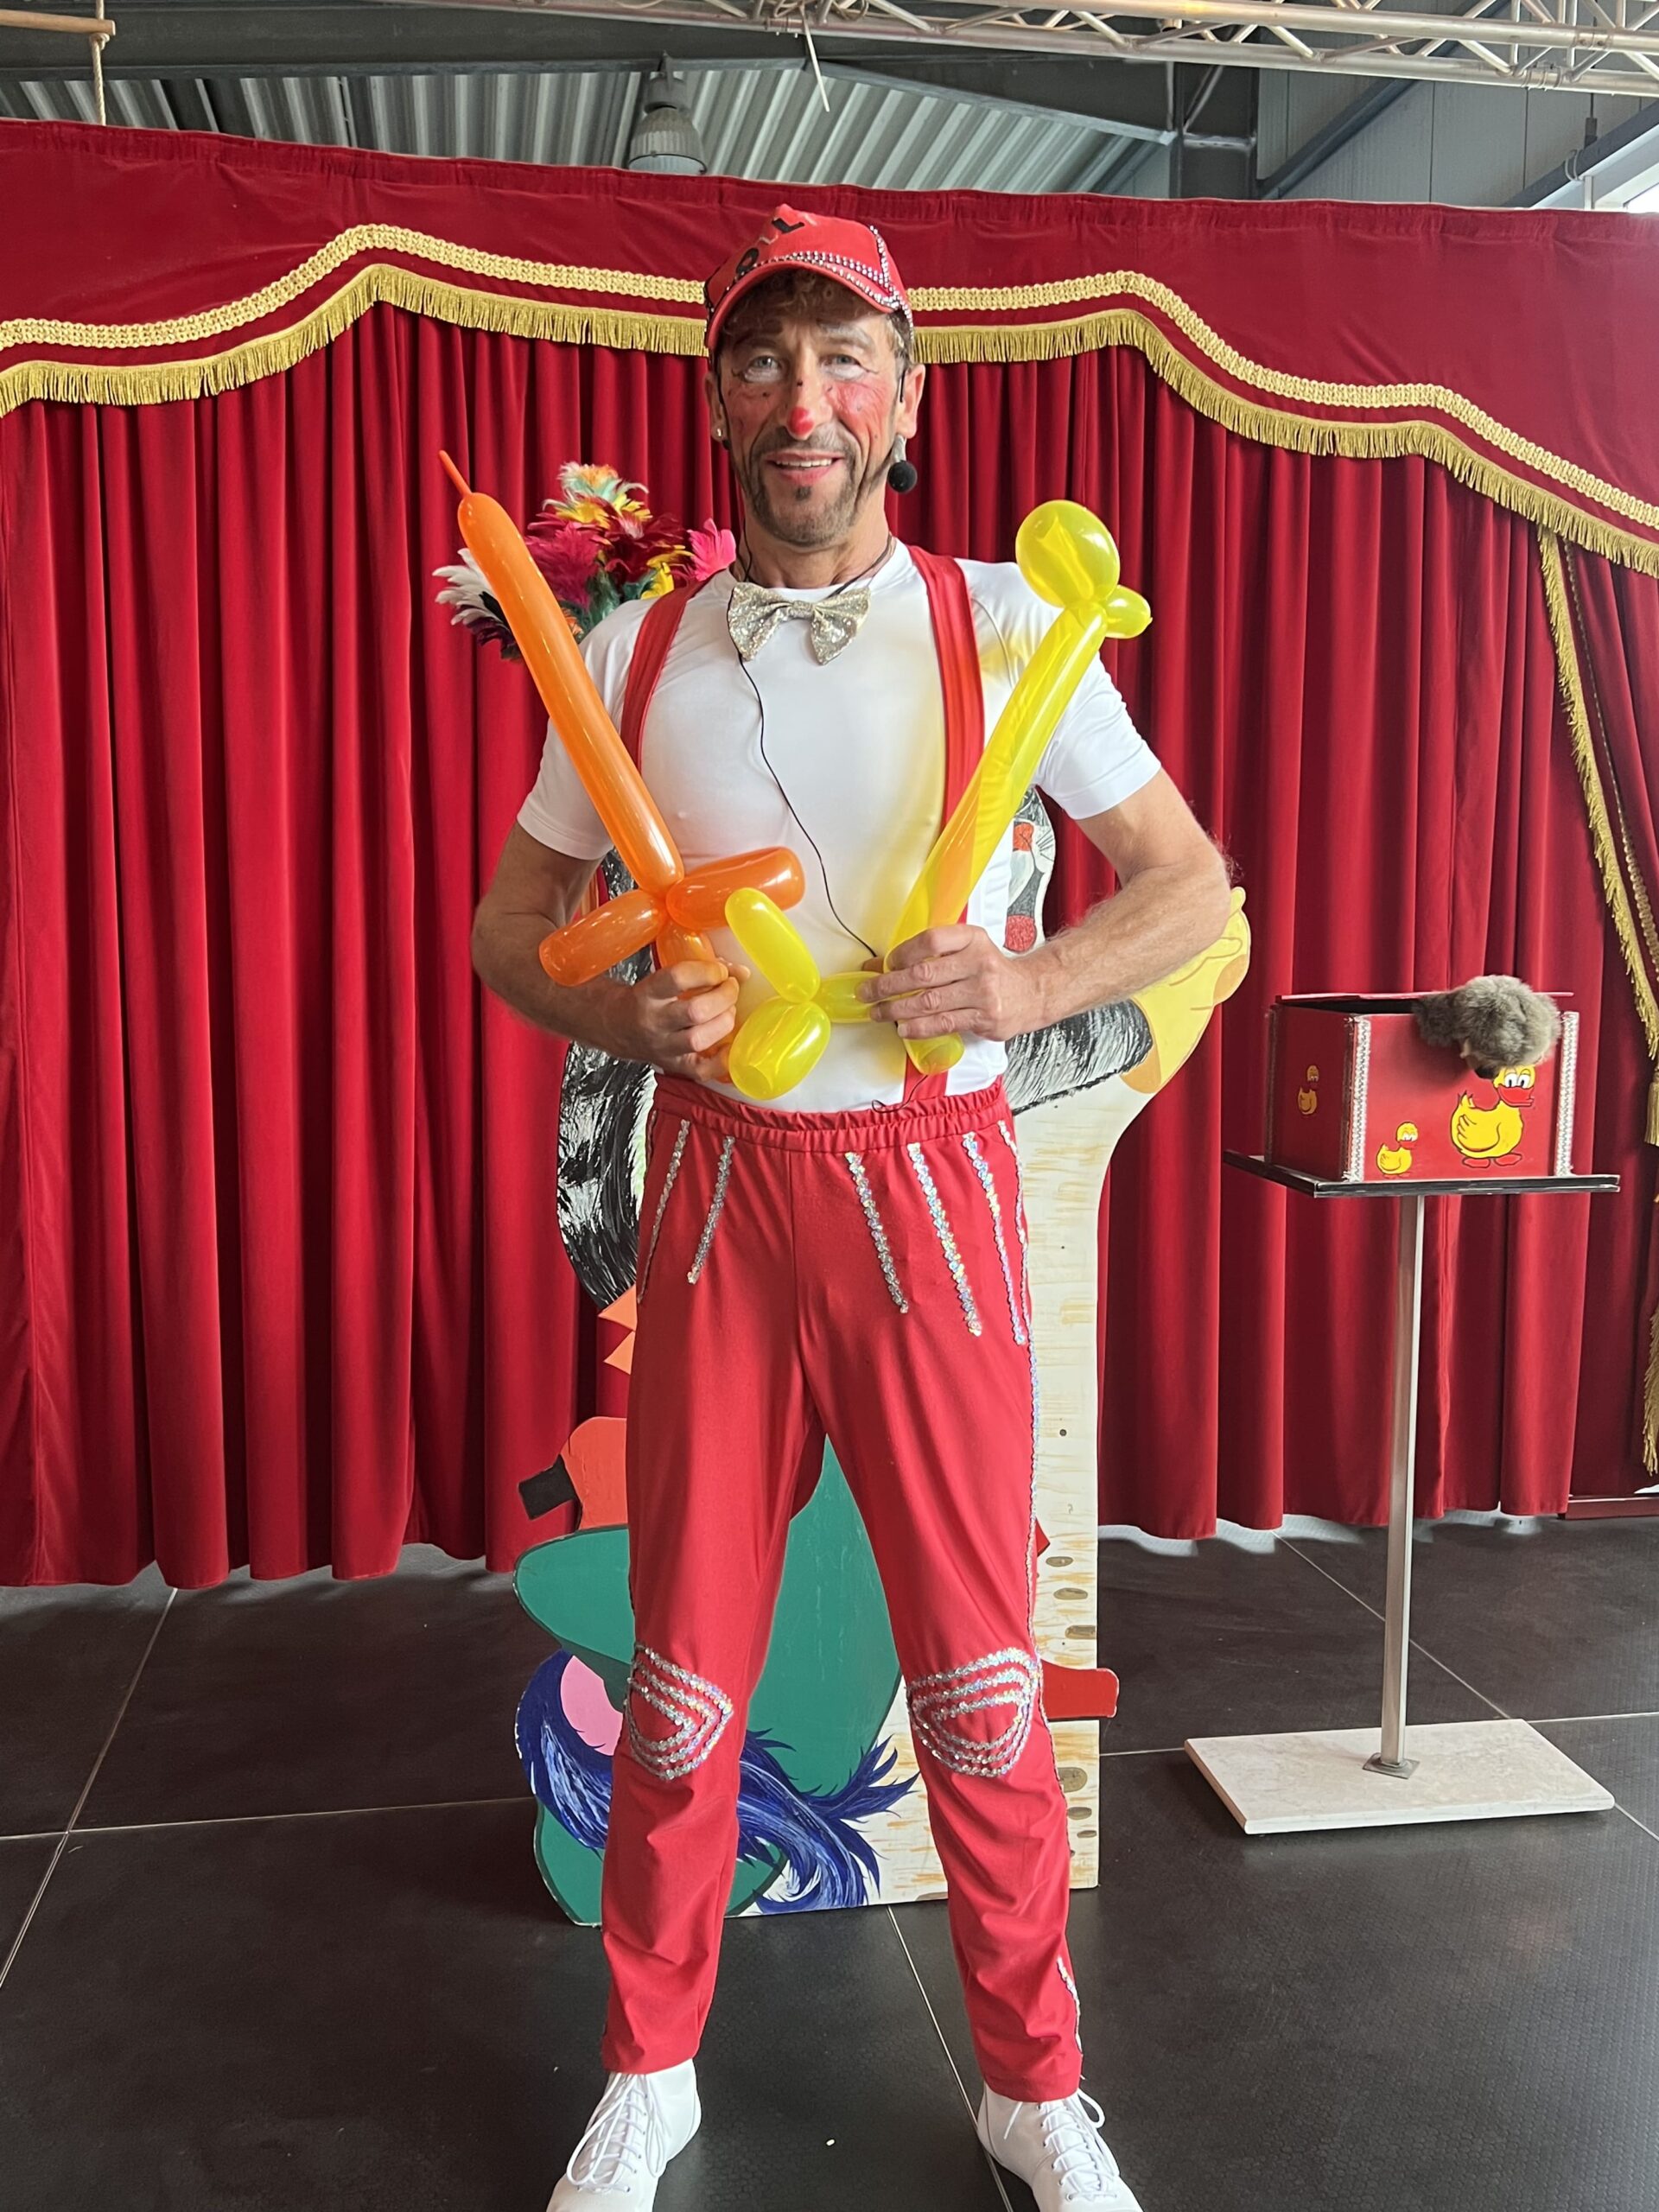 Ballonmodellage - Clown Olli zaubert tolle Überraschungen aus Ballons